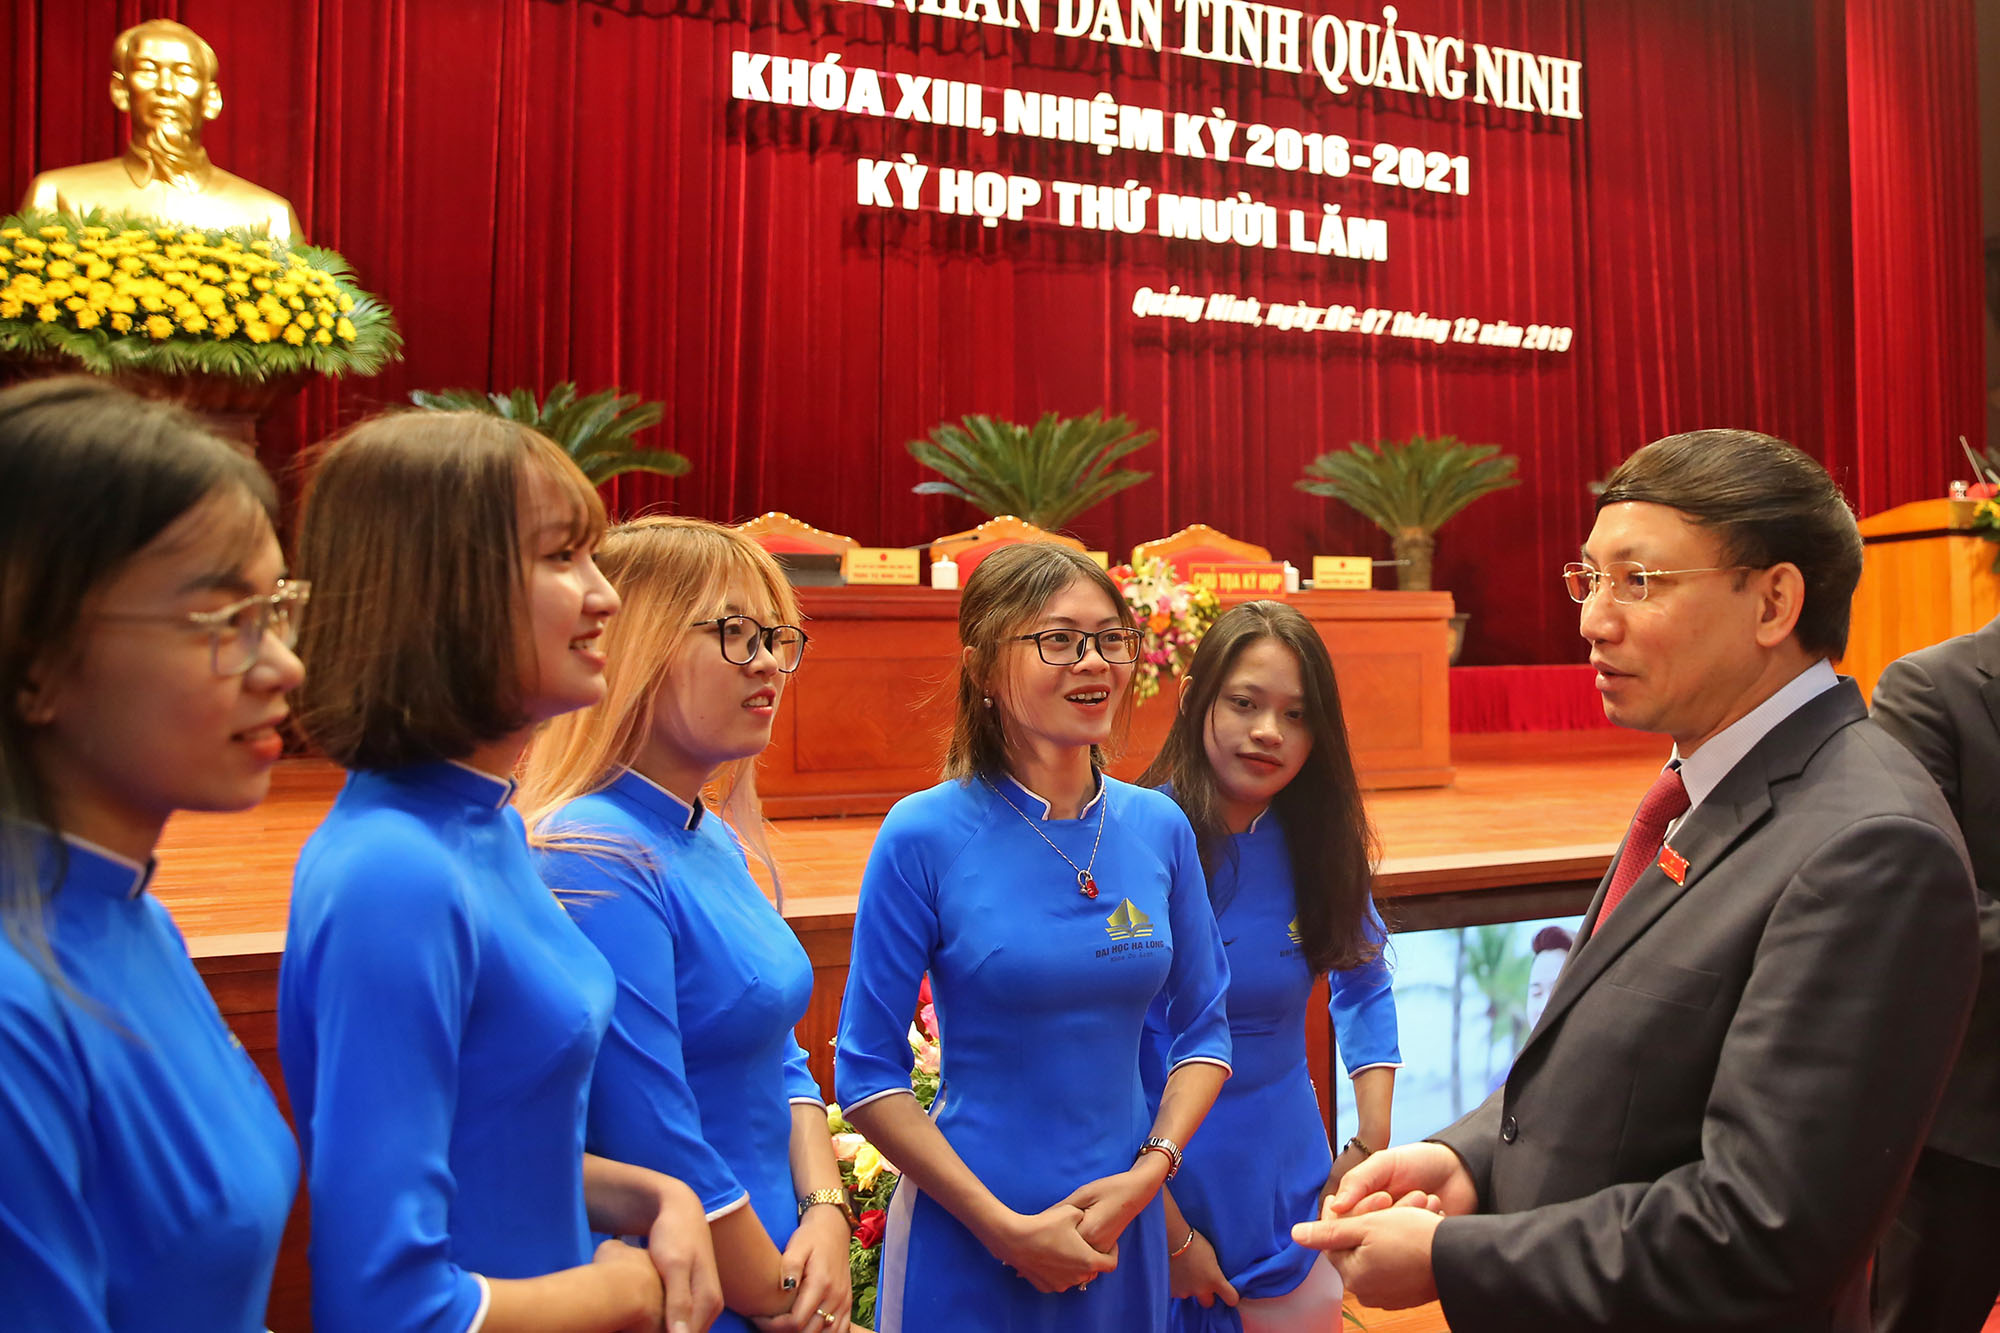 Đồng chí Nguyễn Xuân Ký, Bí thư Tỉnh ủy, Chủ tịch HĐND tỉnh troa đổi cùng các em sinh viên